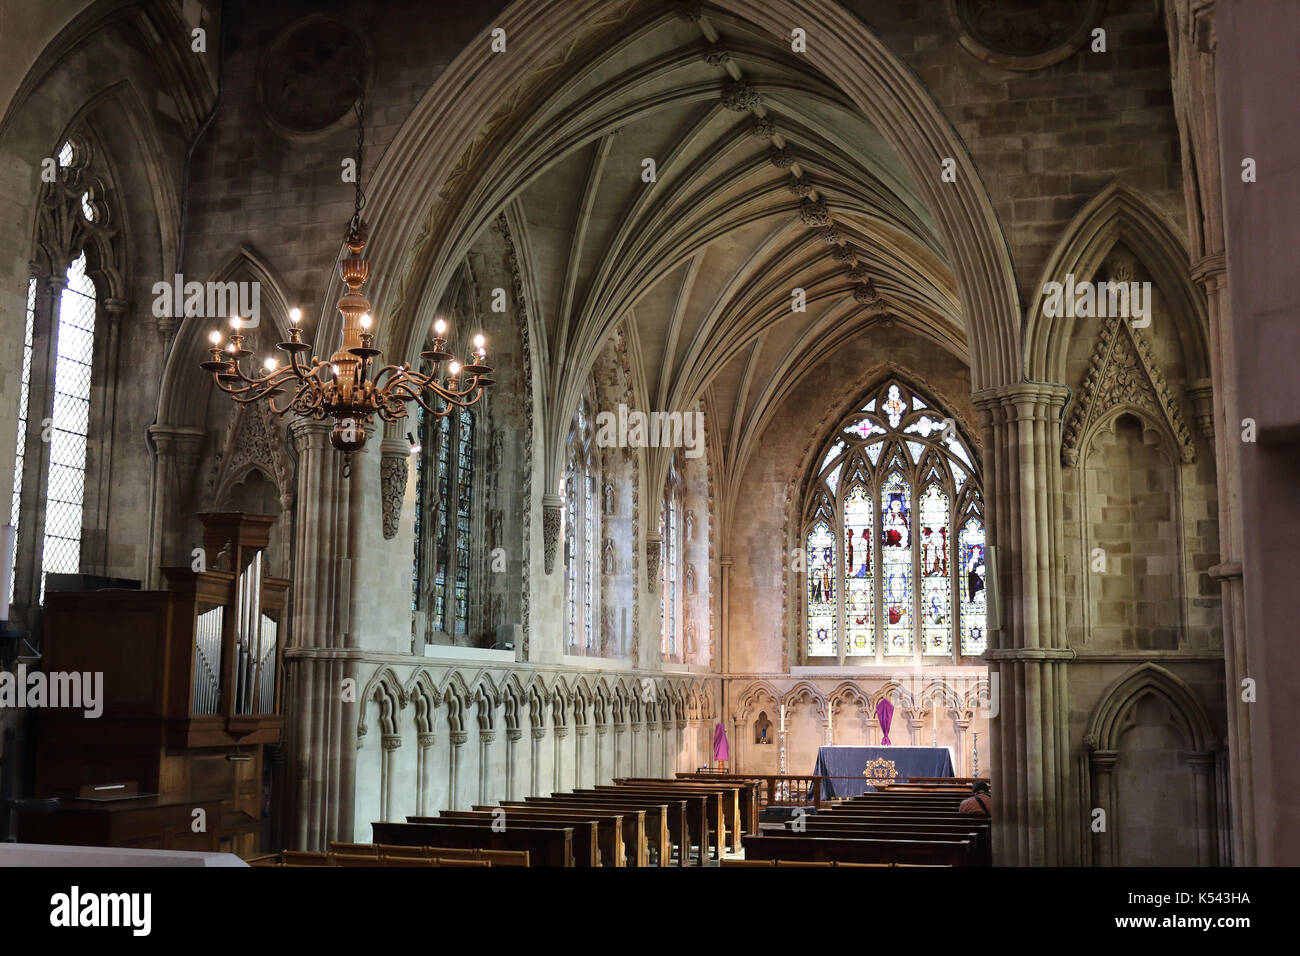 In der Marienkapelle von St Albans Cathedral. Hertfordshire, Großbritannien. Stockfoto